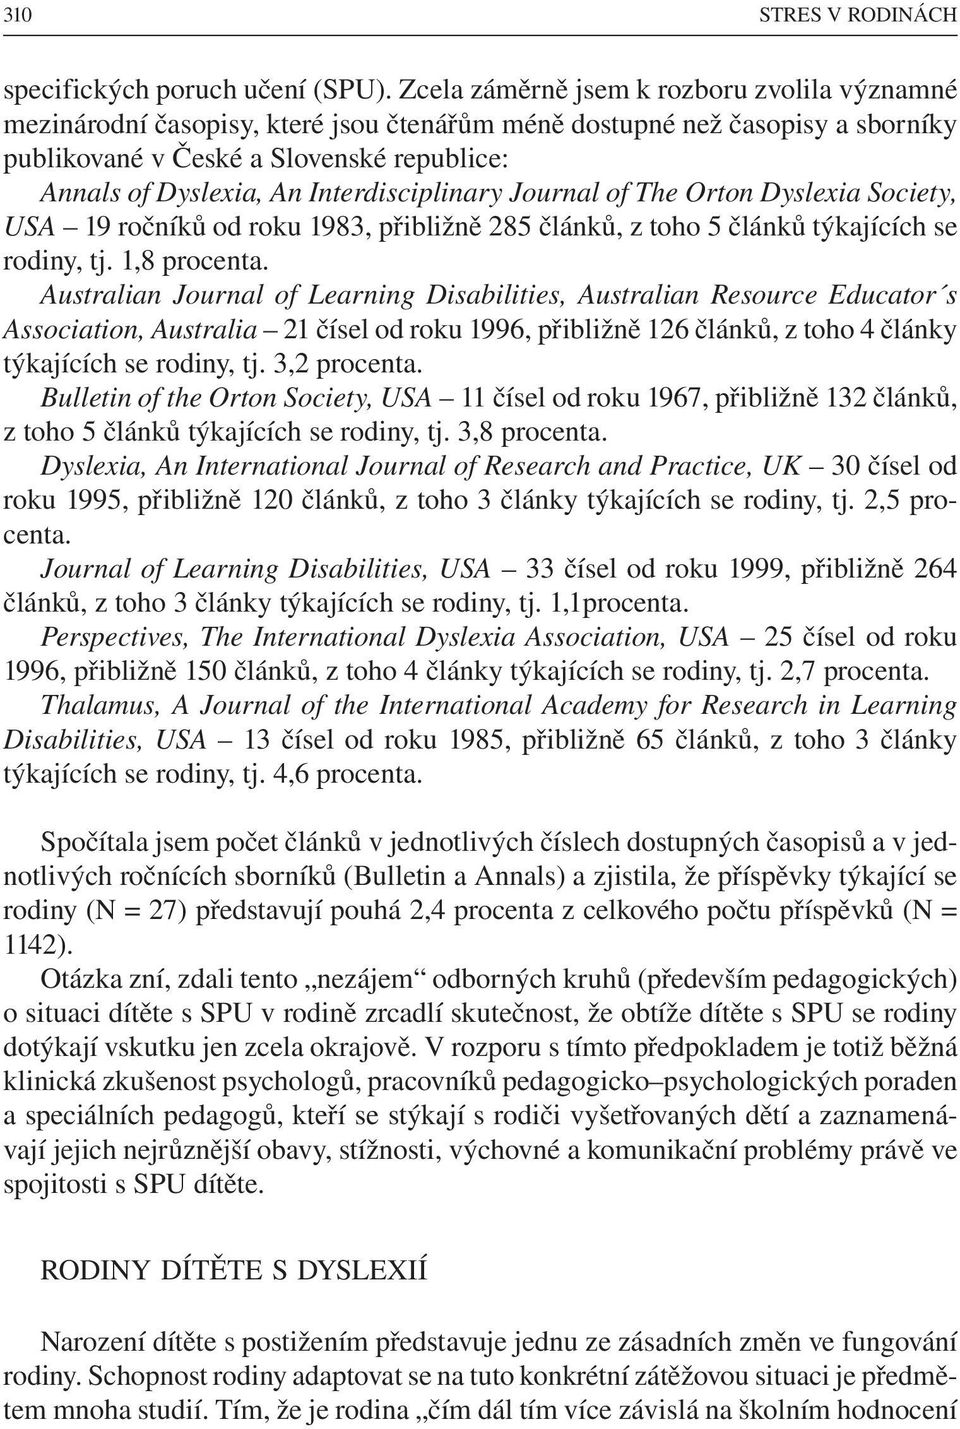 Interdisciplinary Journal of The Orton Dyslexia Society, USA 19 ročníků od roku 1983, přibližně 285 článků, z toho 5 článků týkajících se rodiny, tj. 1,8 procenta.